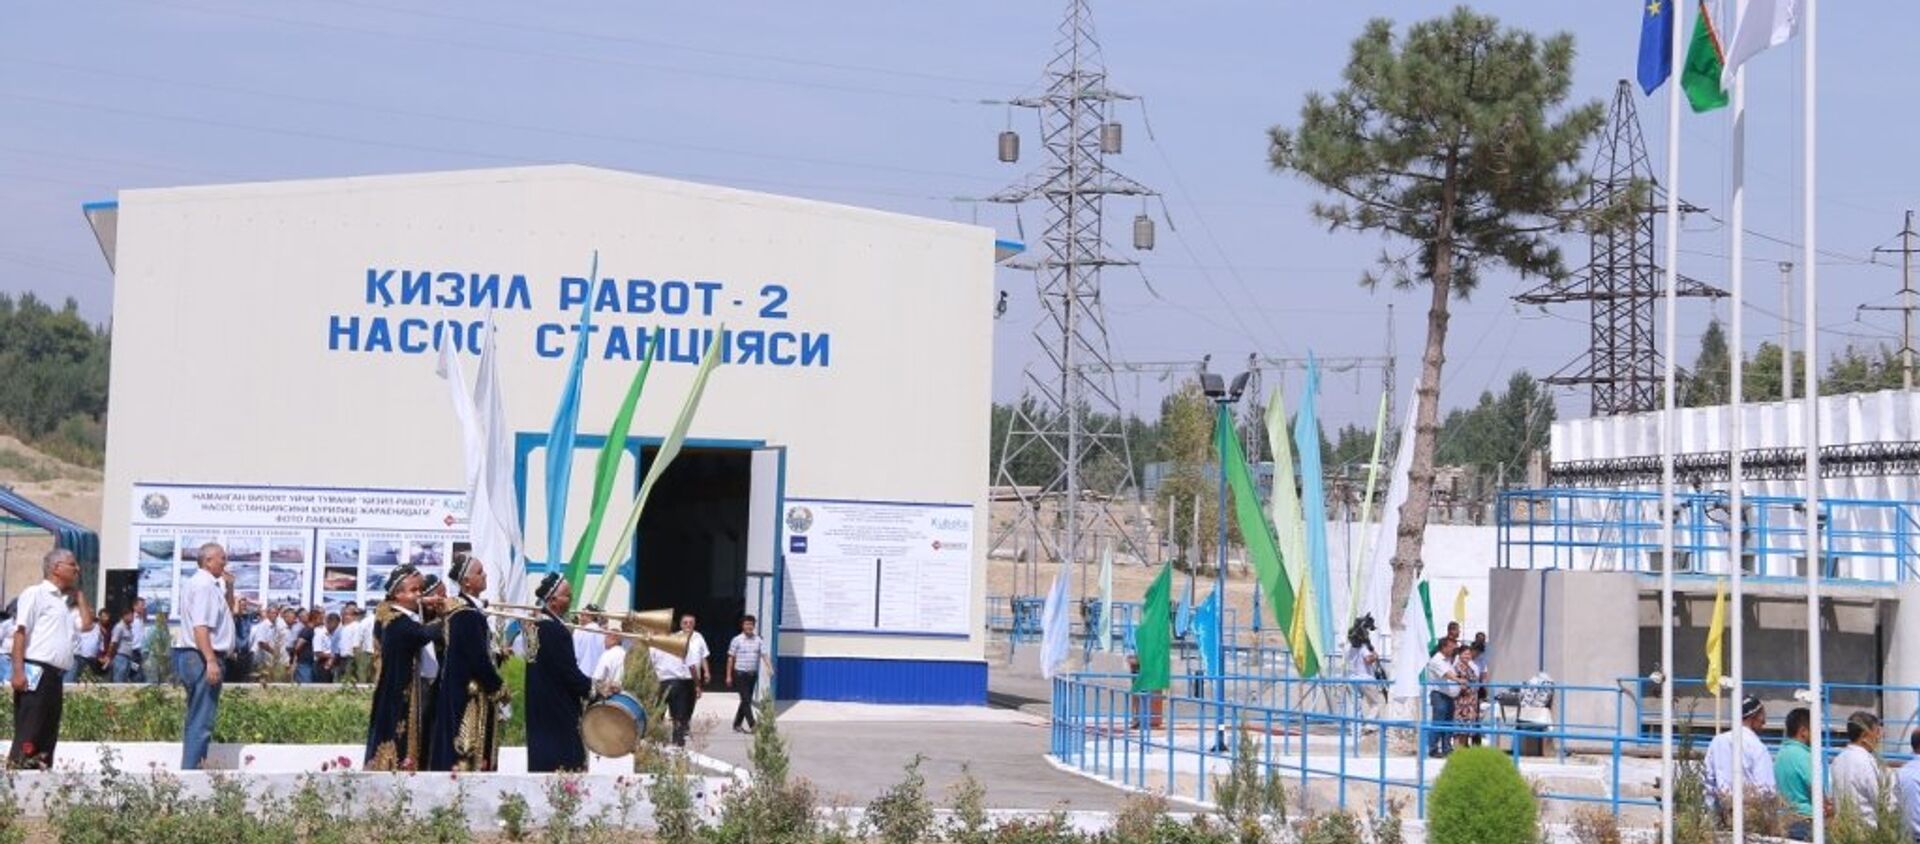 Новая насосная станция Кизил Равот-2 в Наманганской области - Sputnik Узбекистан, 1920, 05.09.2016